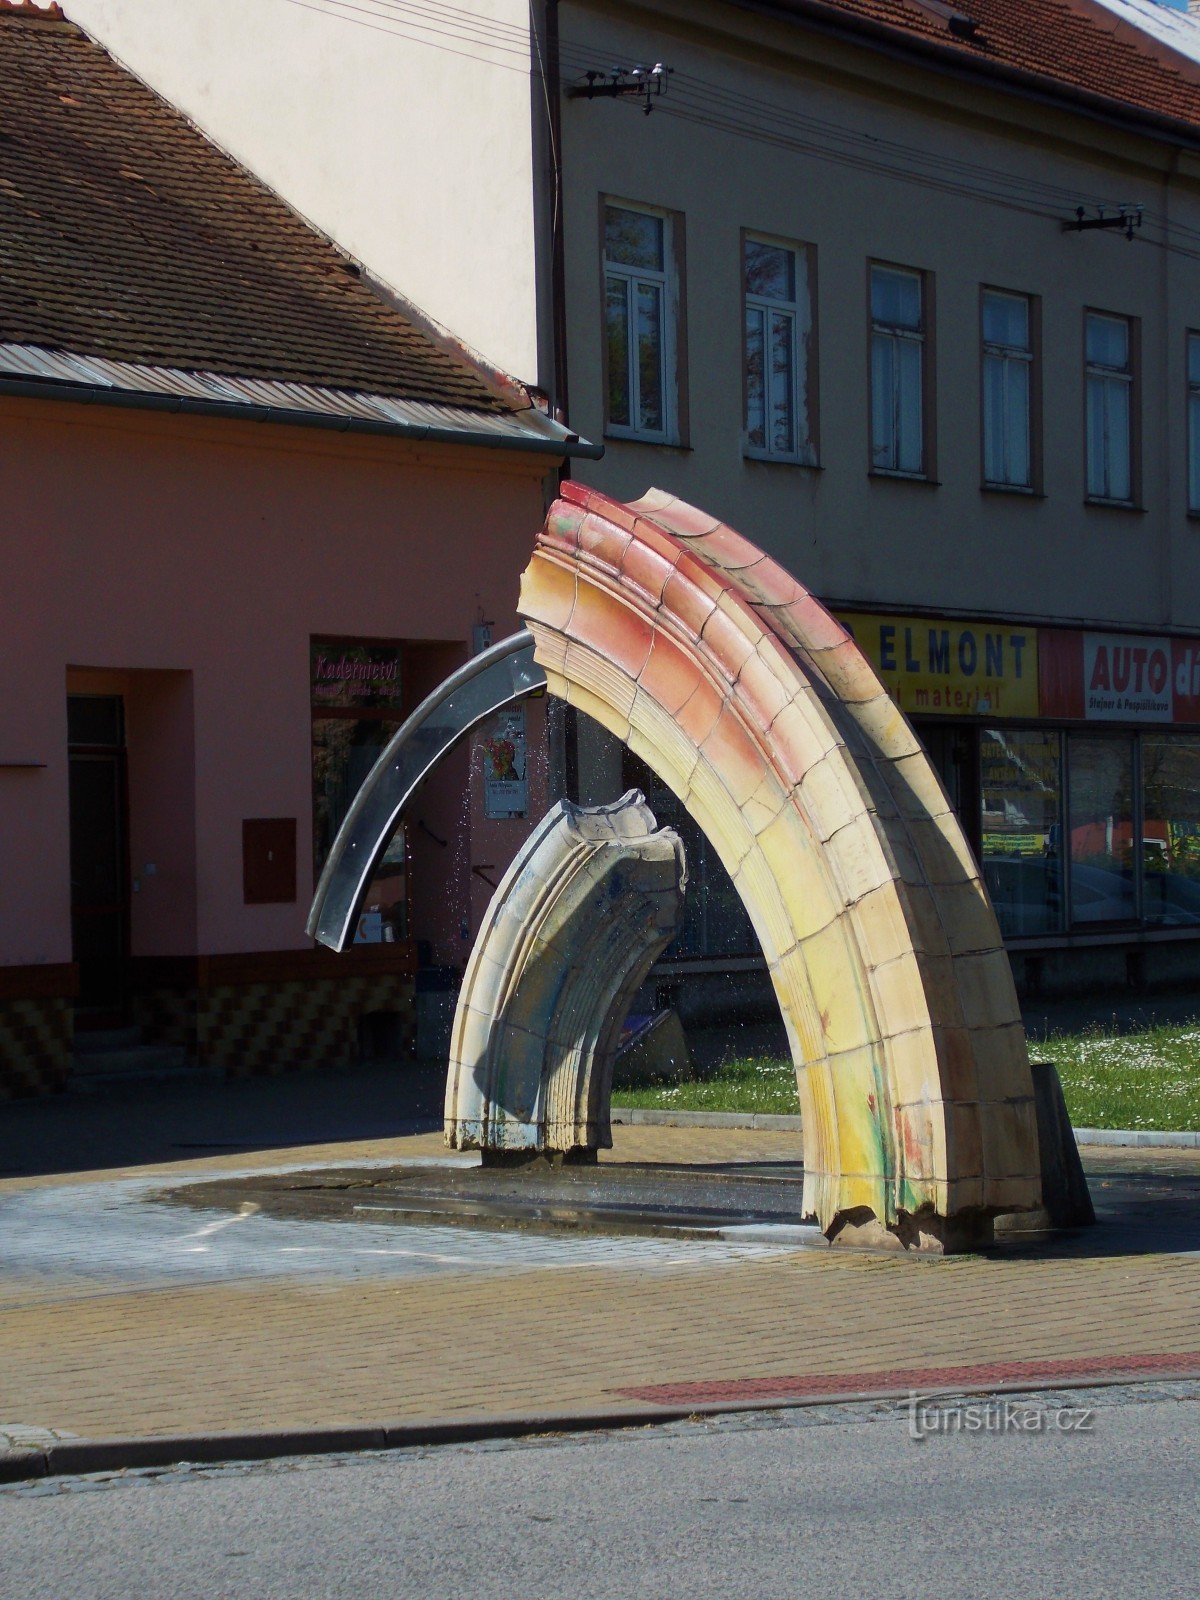 Δύο σιντριβάνια - διακοσμήσεις της πόλης στο Bystřice pod Hostýnem